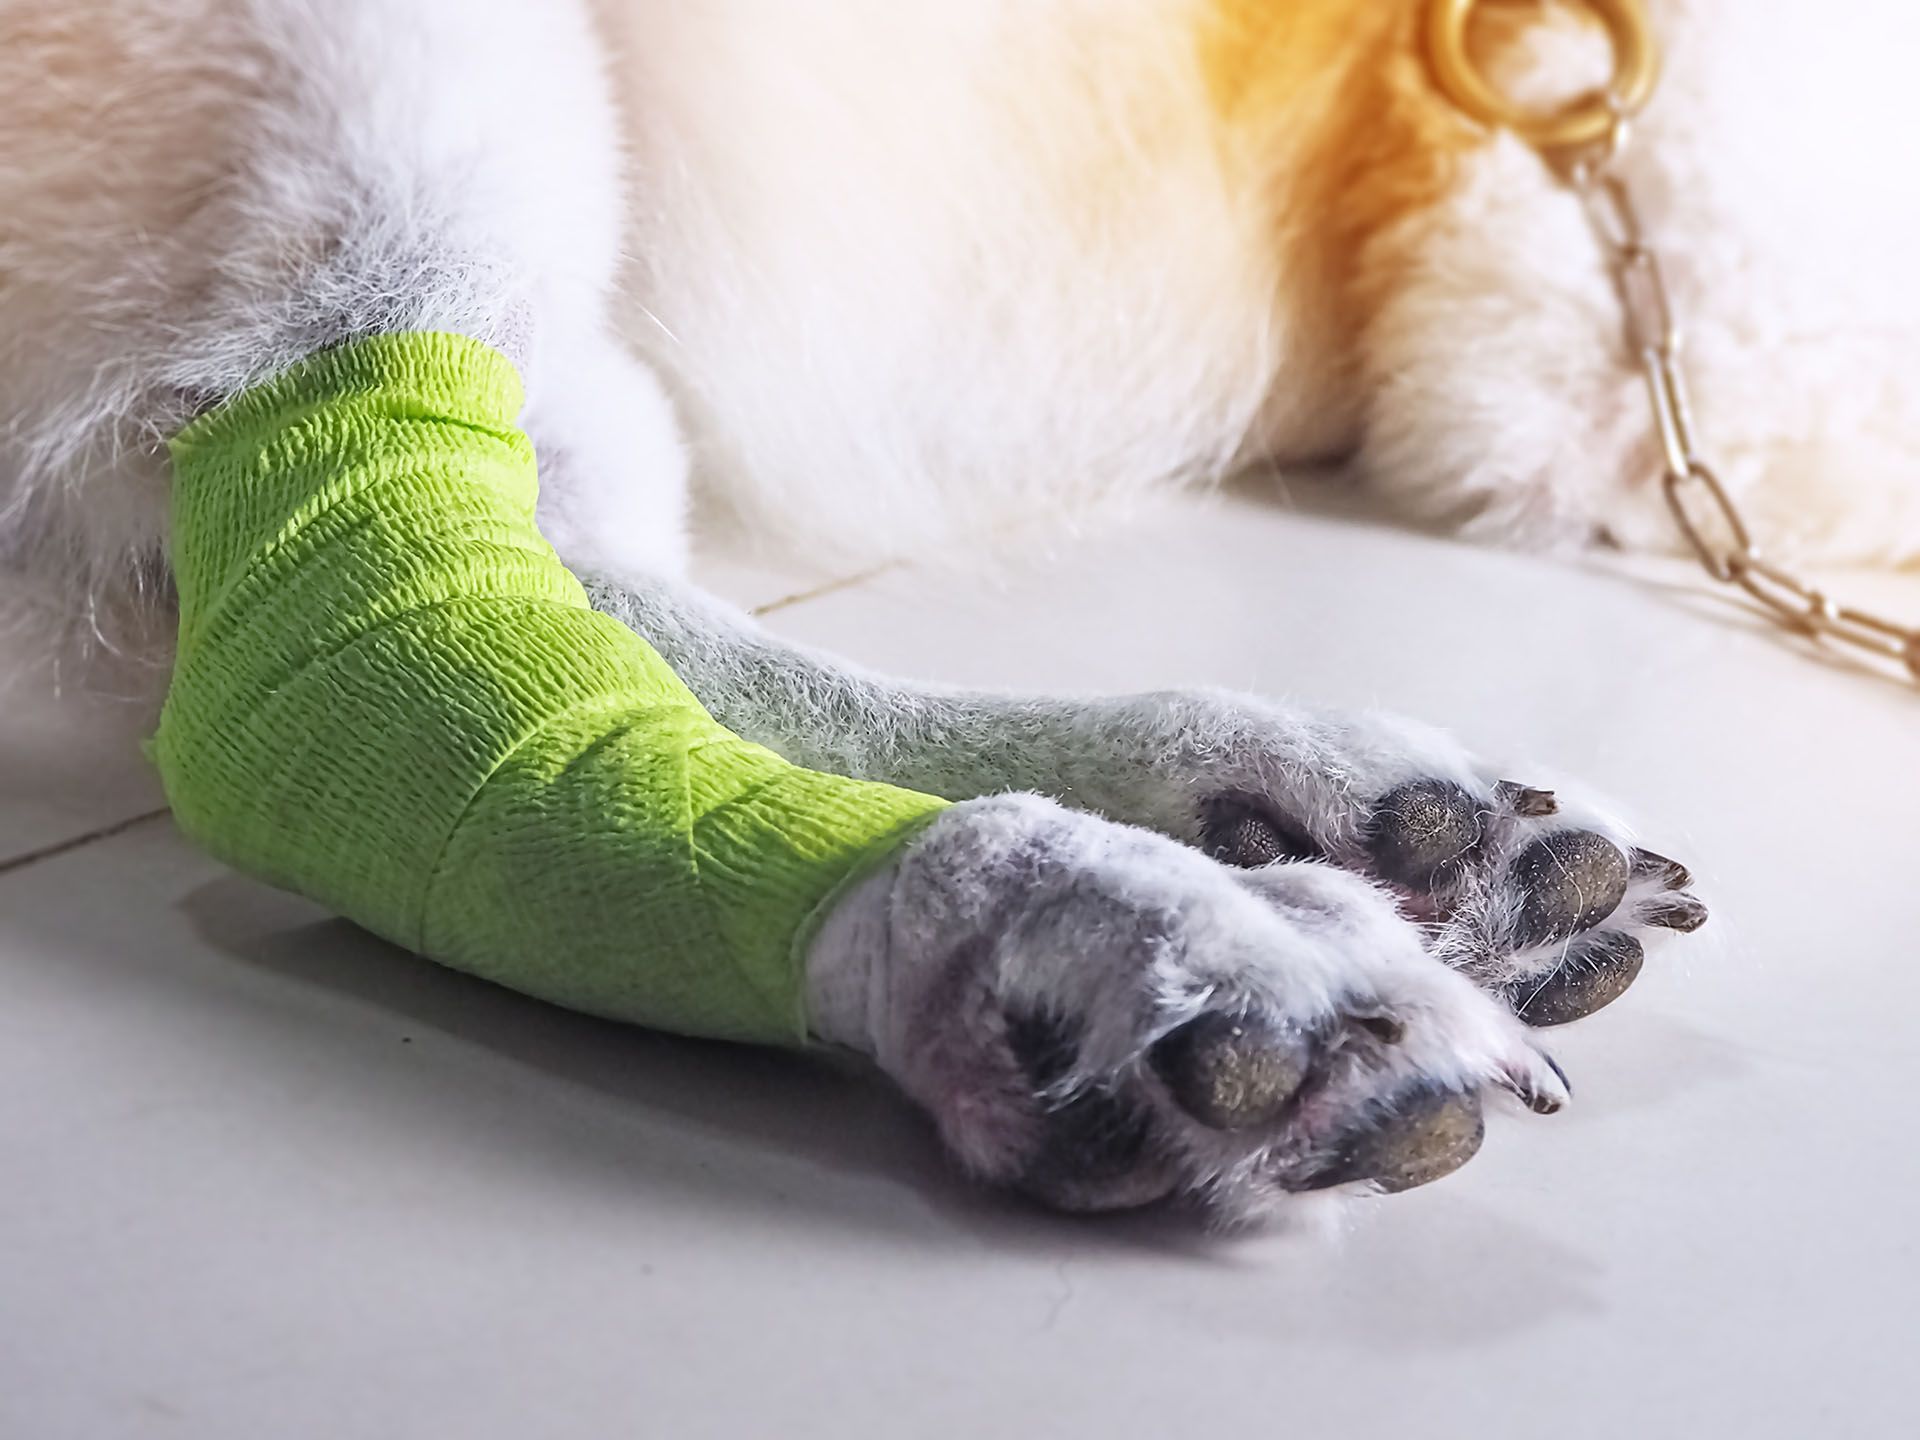 dog leg wrapped with bandage